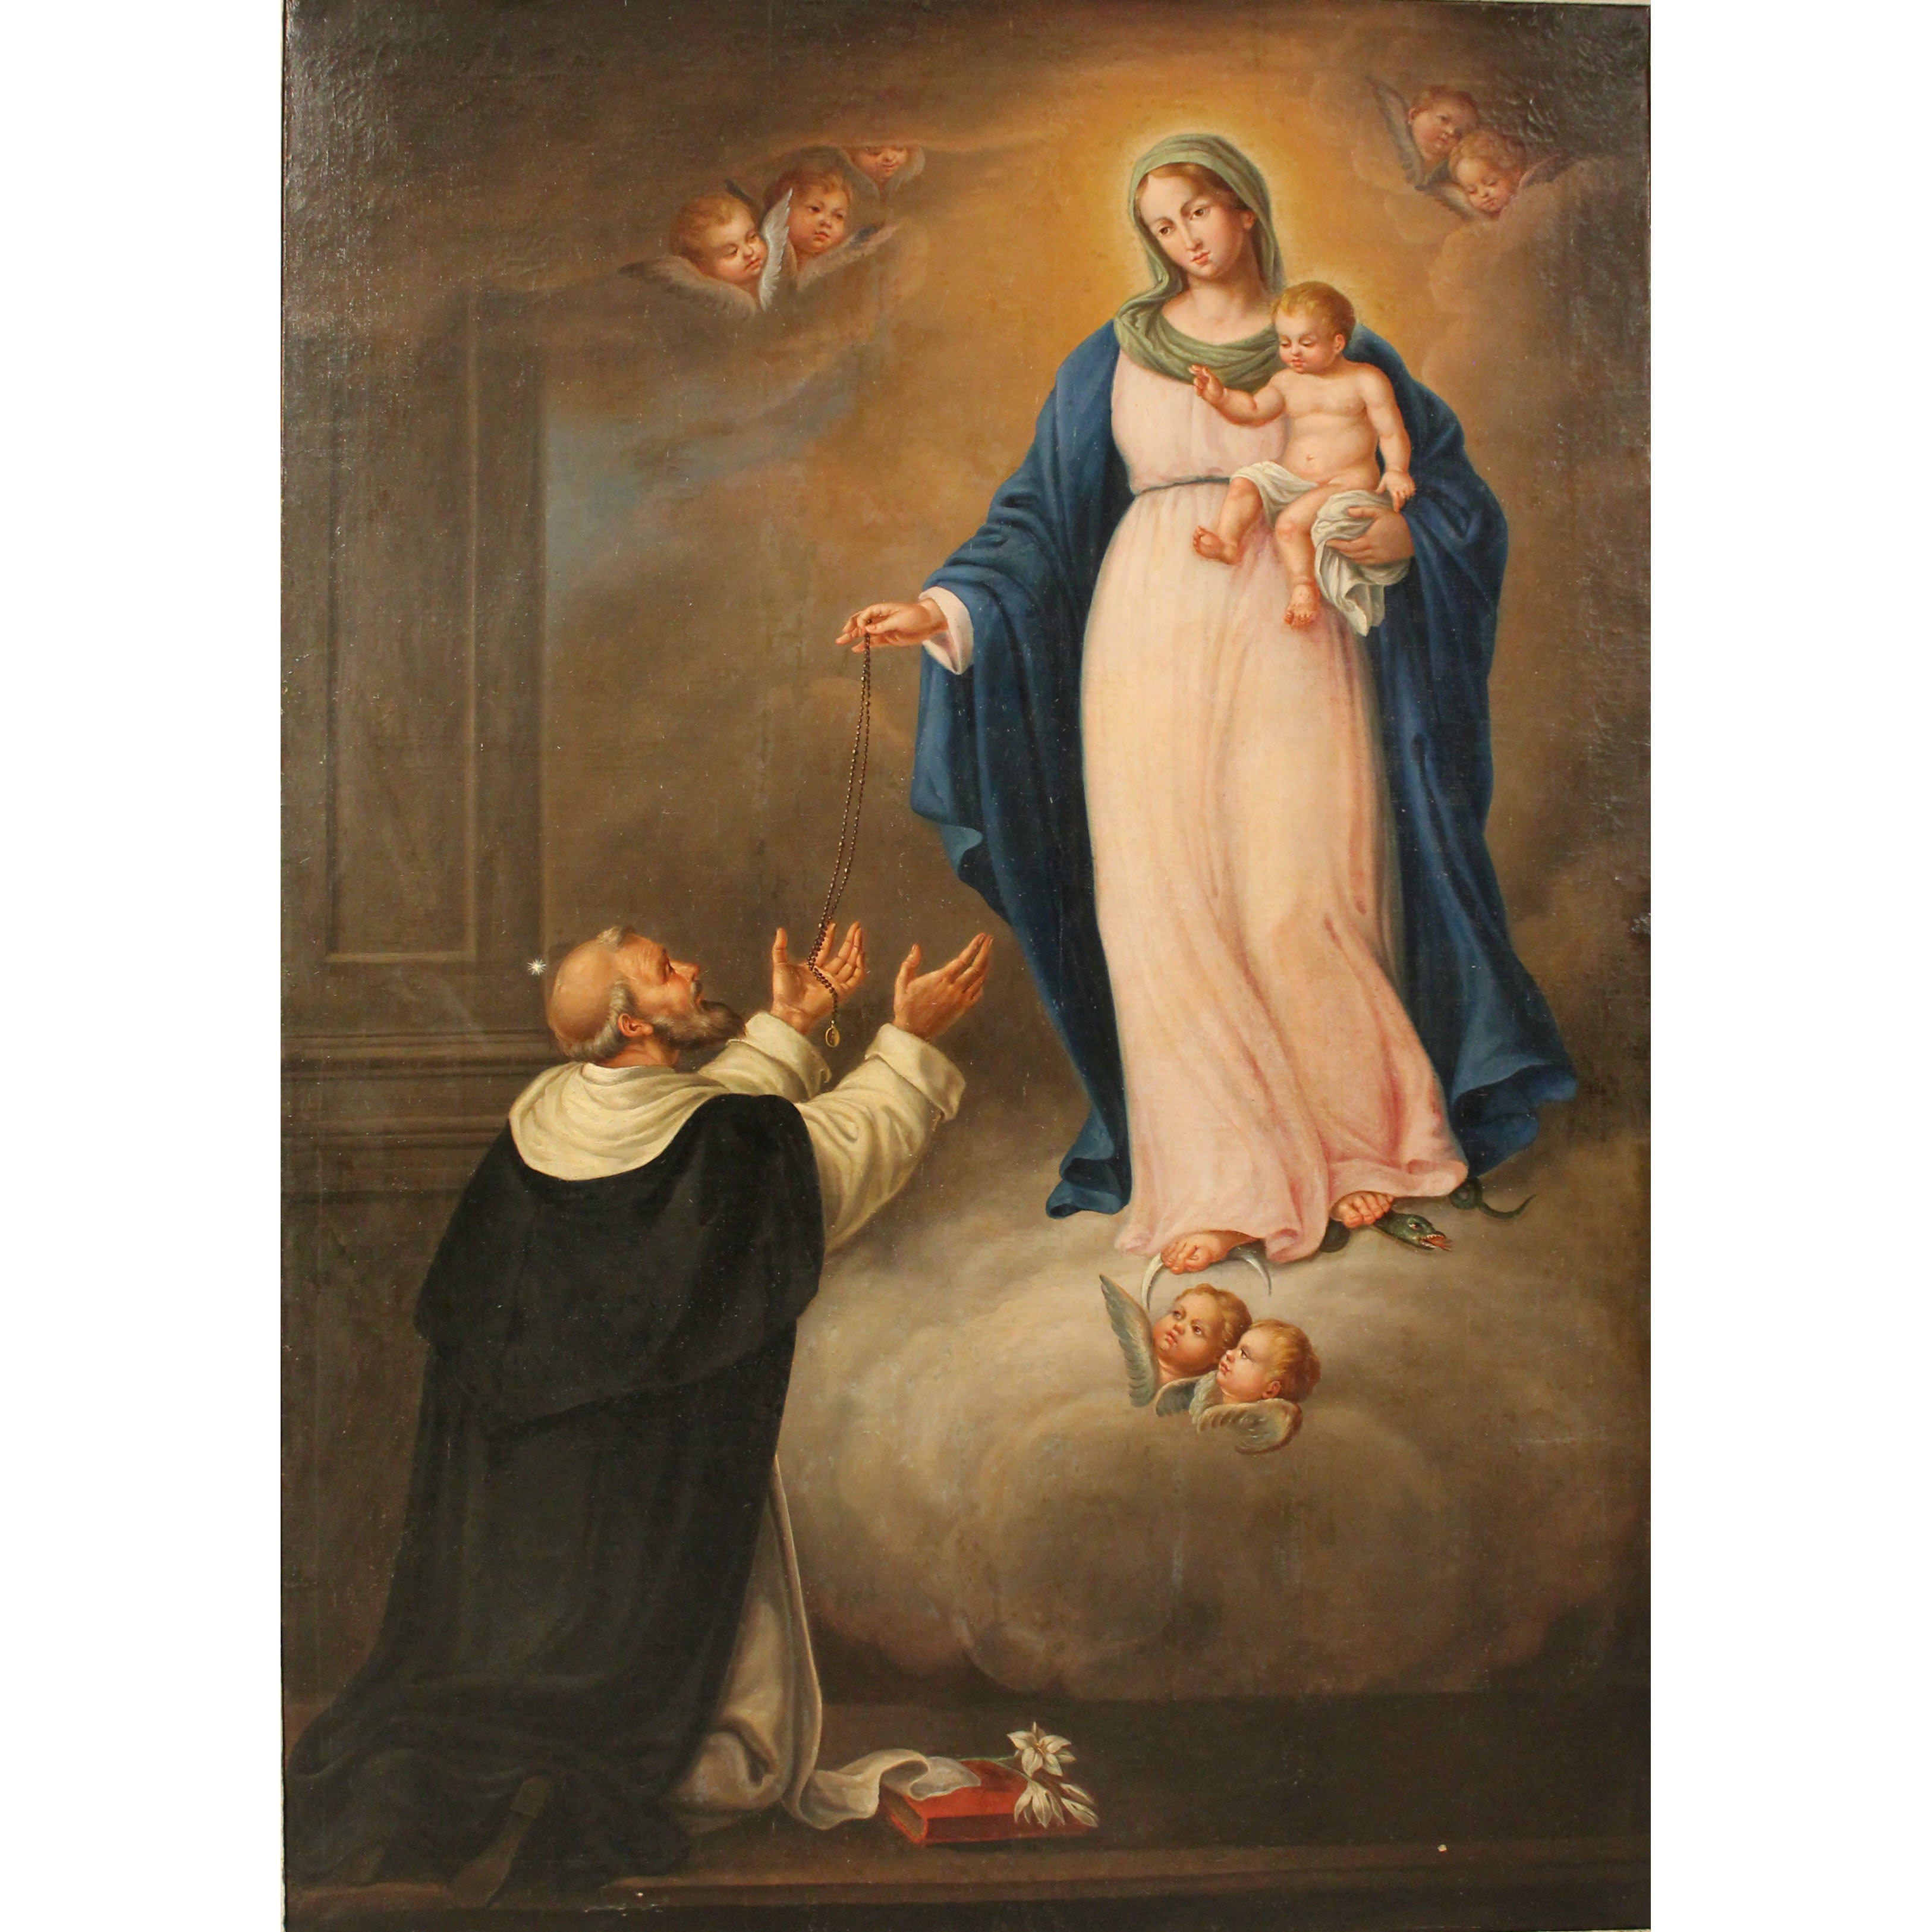 Scuola siciliana del secolo XVIII "La Madonna con il bambino e San Domenico" - Sicilian school of the eighteenth century "The Madonna with the child and San Domenico"